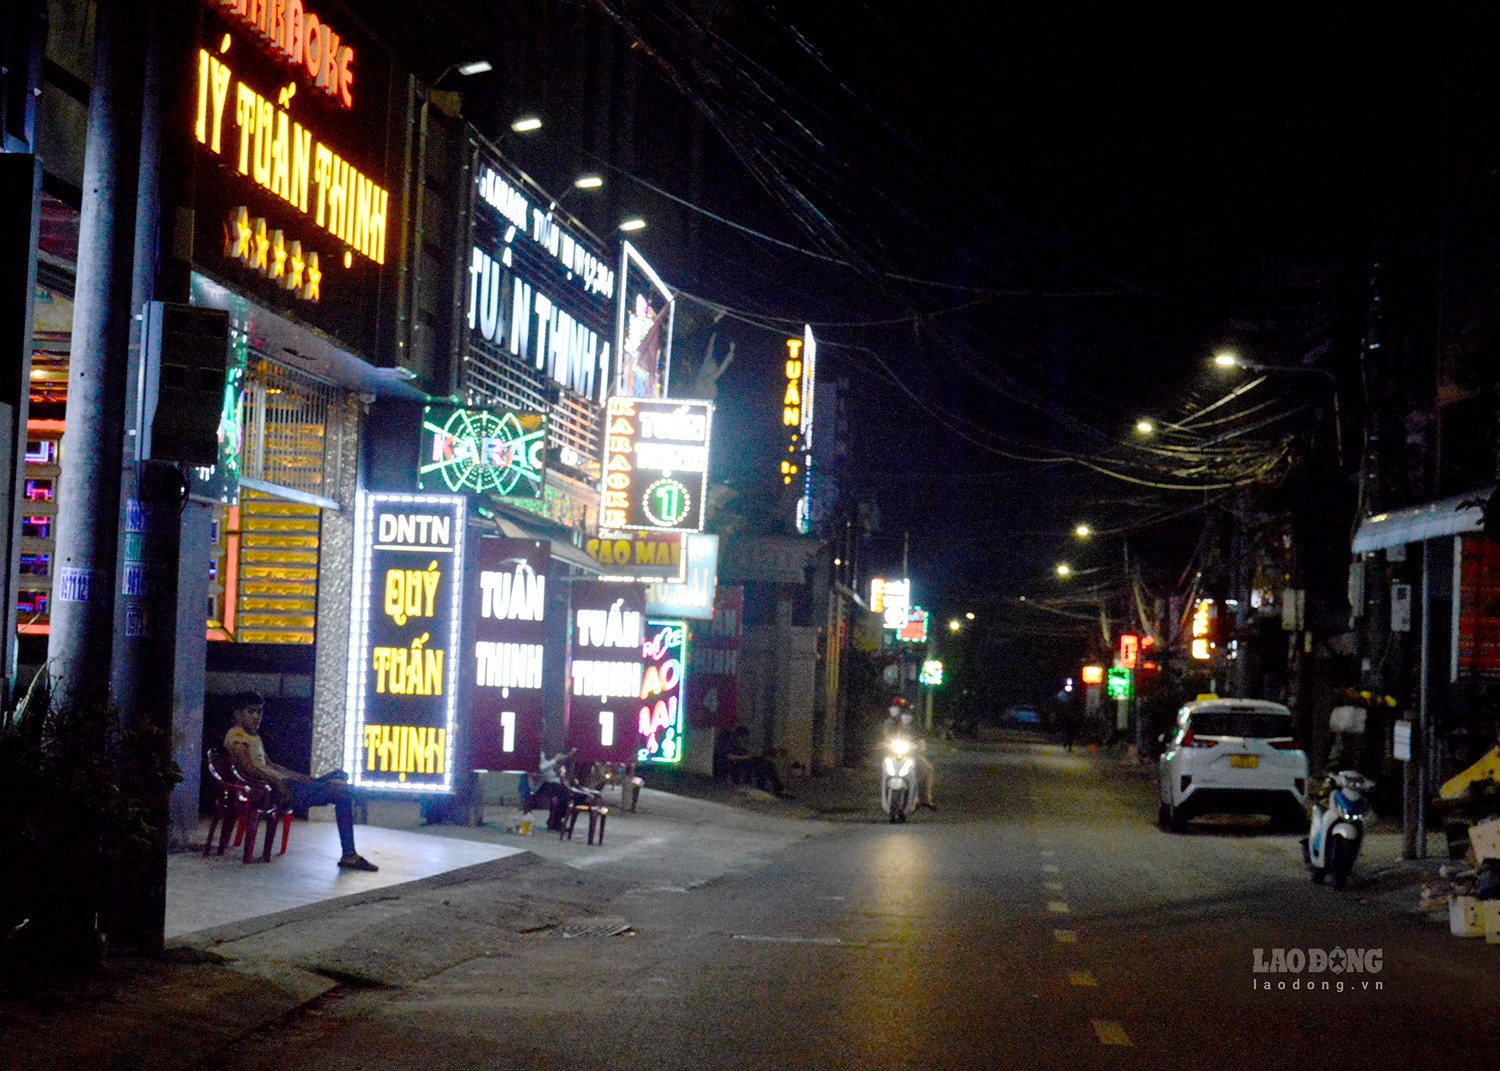 Đường Trần Quang Diệu nơi tập trung nhiều quán karaoke ở TP Quảng Ngãi, được ví như “thiên đường” ăn nhậu, hát hò nhưng hiện “vắng như chùa Bà Đanh“. Ảnh: Ngọc Viên